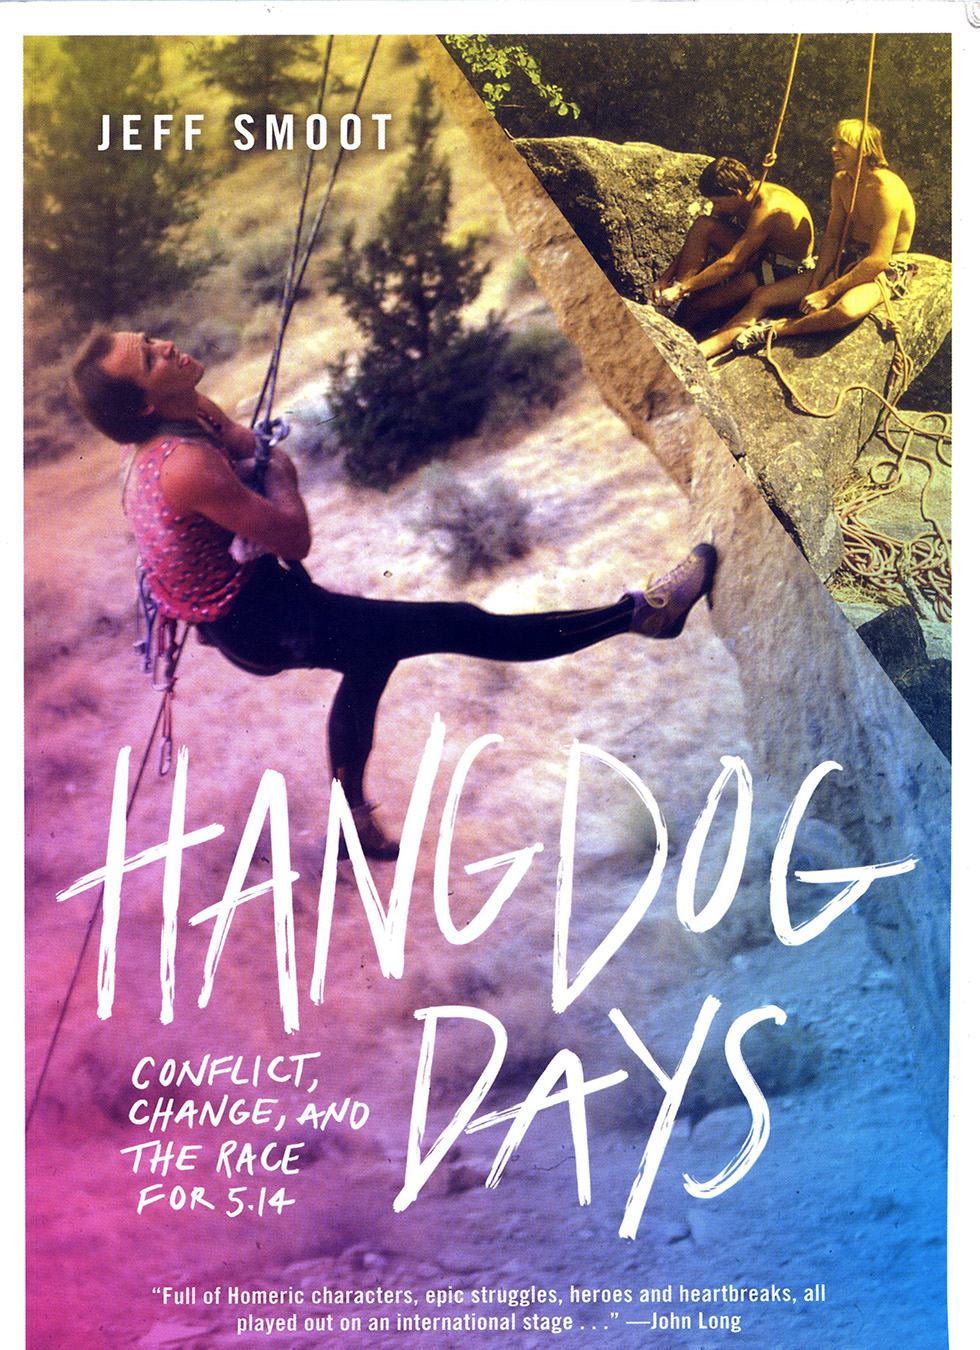 Hang Dog Days